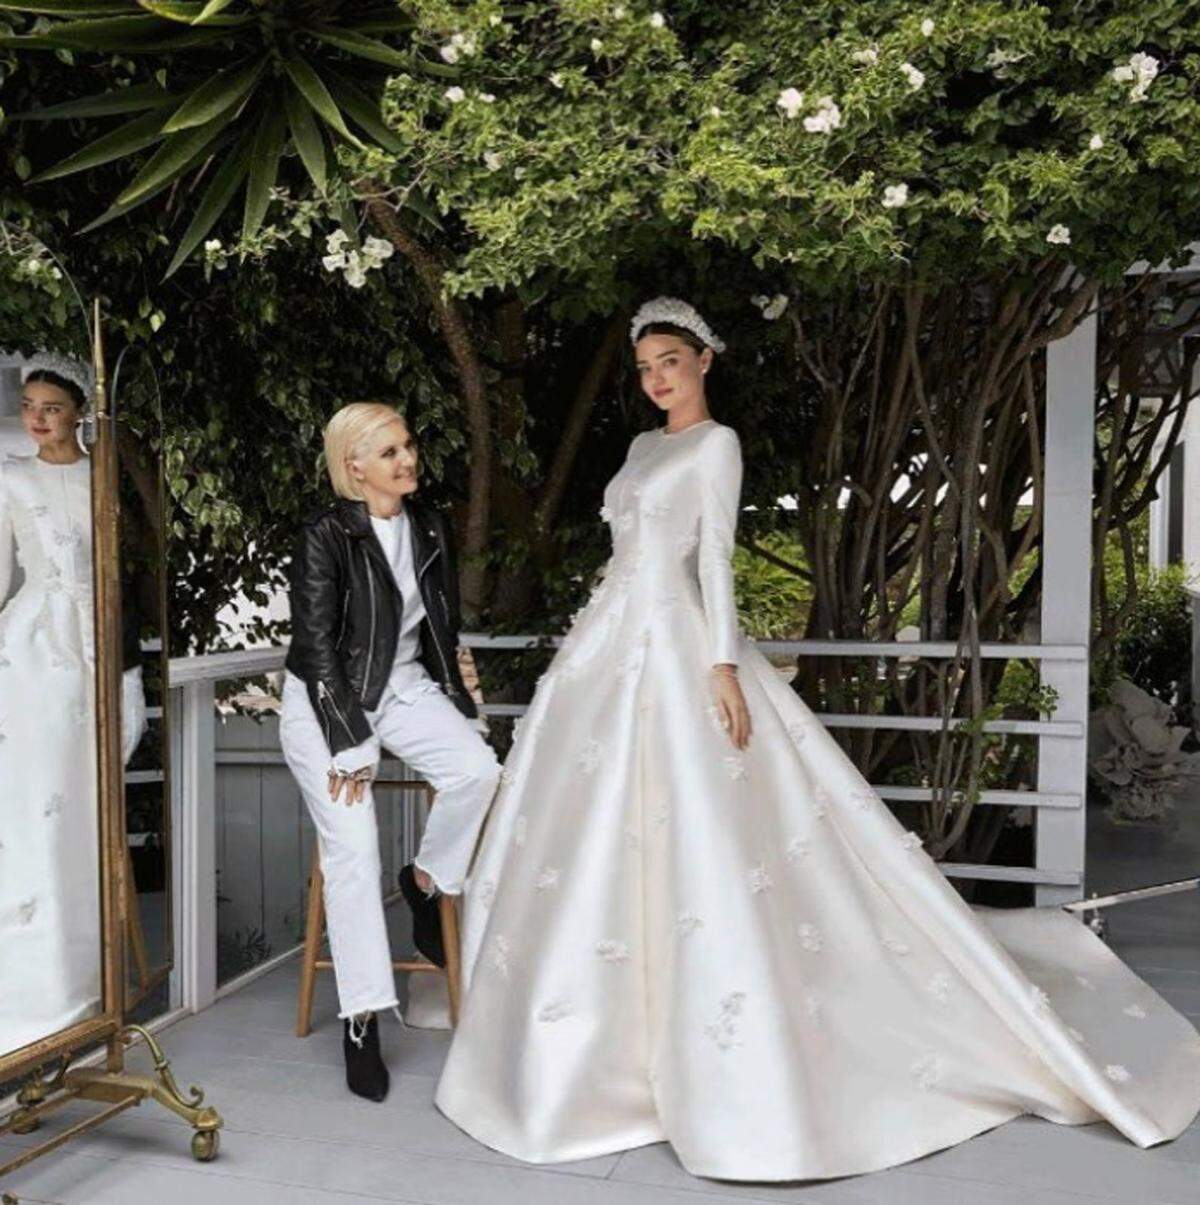 Das 34-jährige Model heiratete in einem Entwurf von Dior-Chefdesignerin Maria Grazia Chiuri. Inspiration war das hochgeschlossene Hochzeitskleid von Grace Kelly.